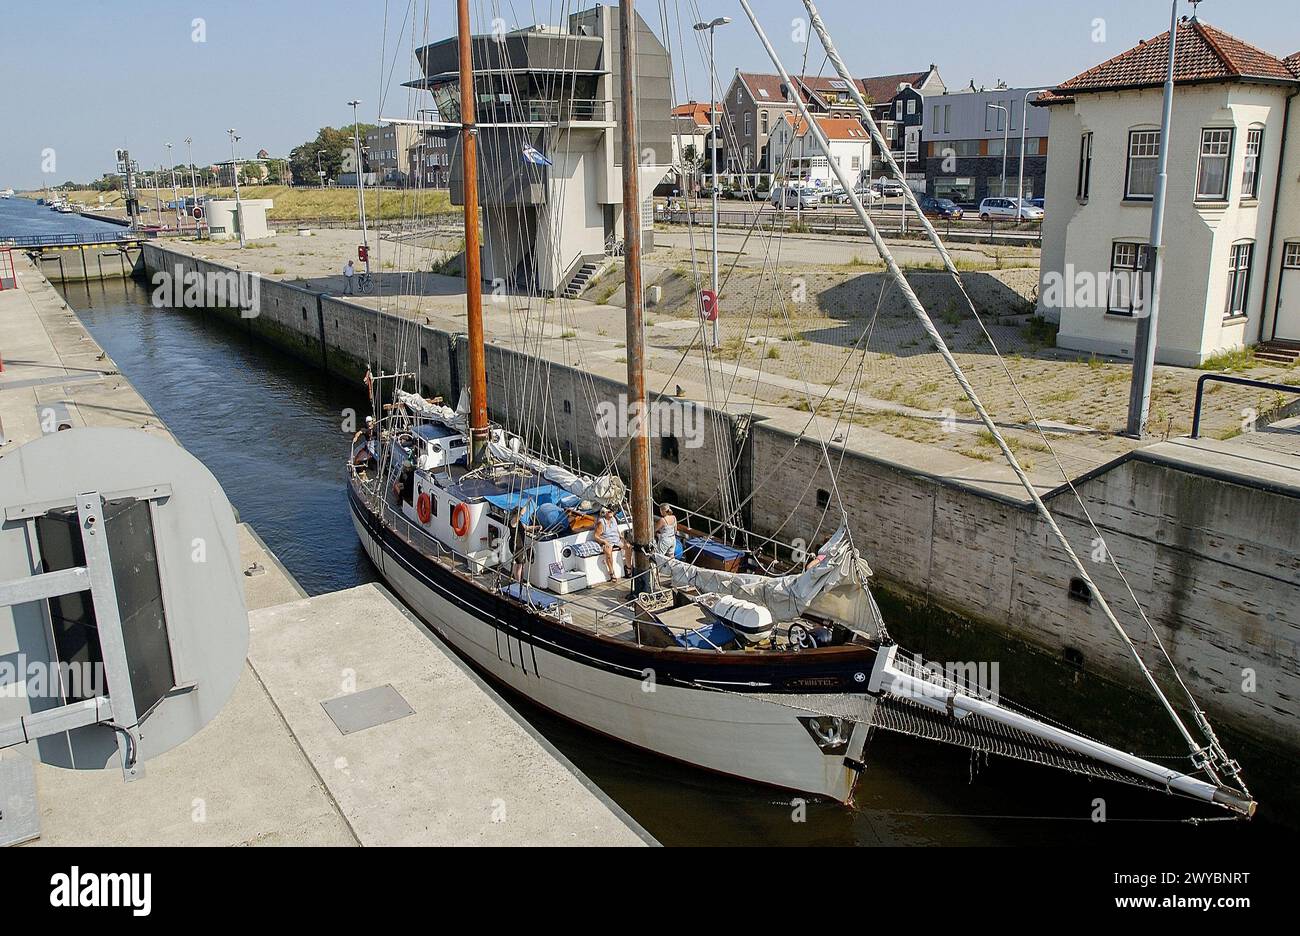 Noordersluis (Northern Lock) in Noordzeekanaal (North Sea Canal). Ijmuiden. Netherlands. Stock Photo